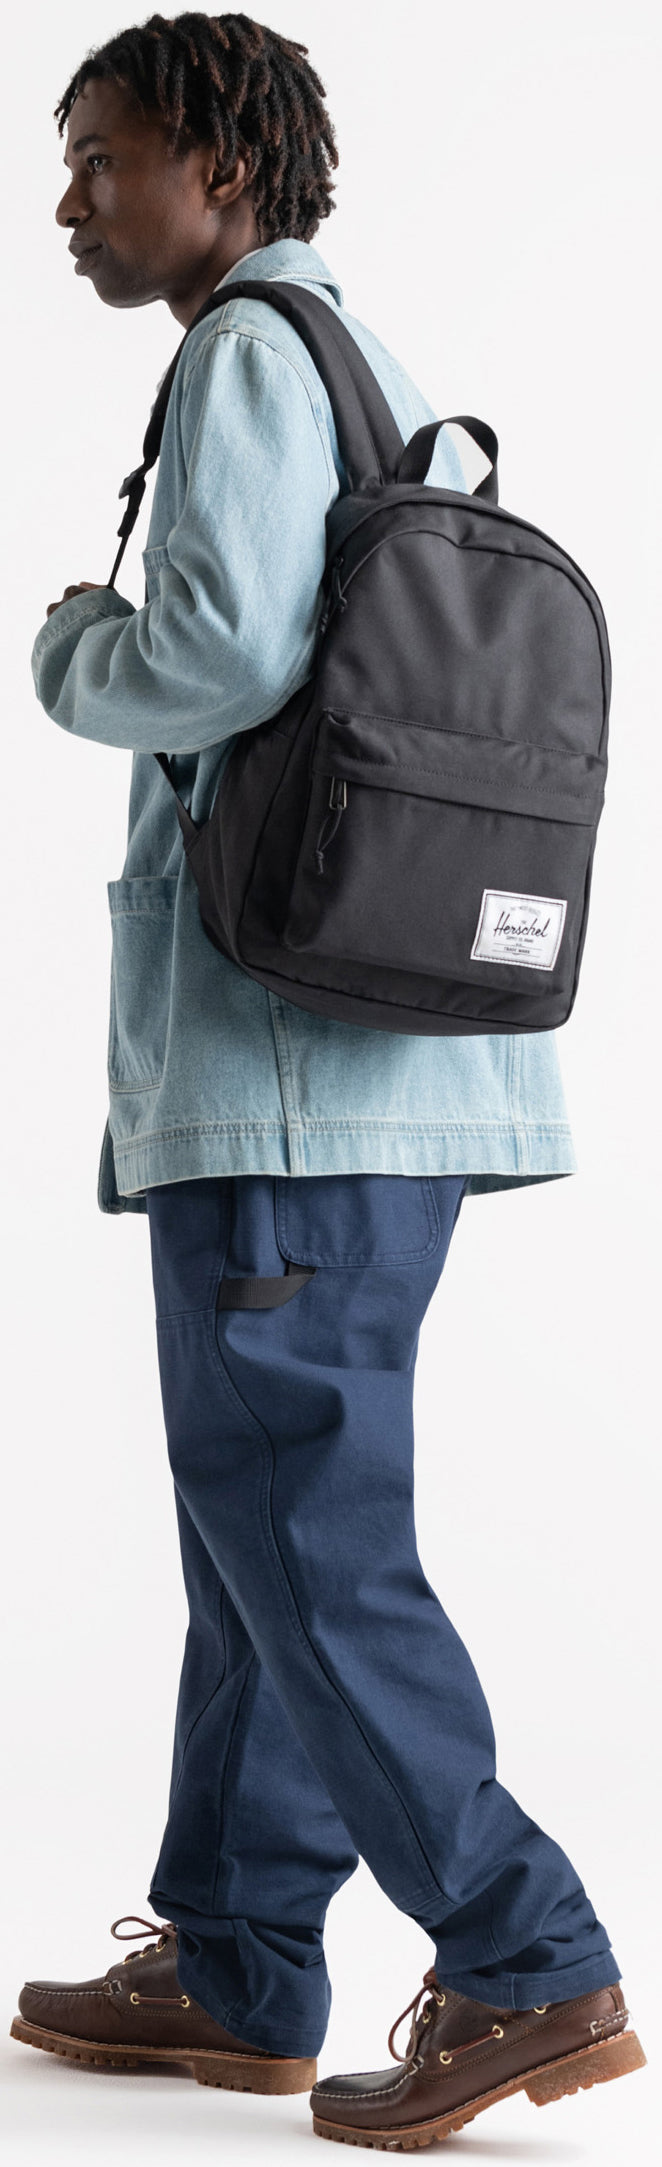 Herschel Classic Backpack - Black